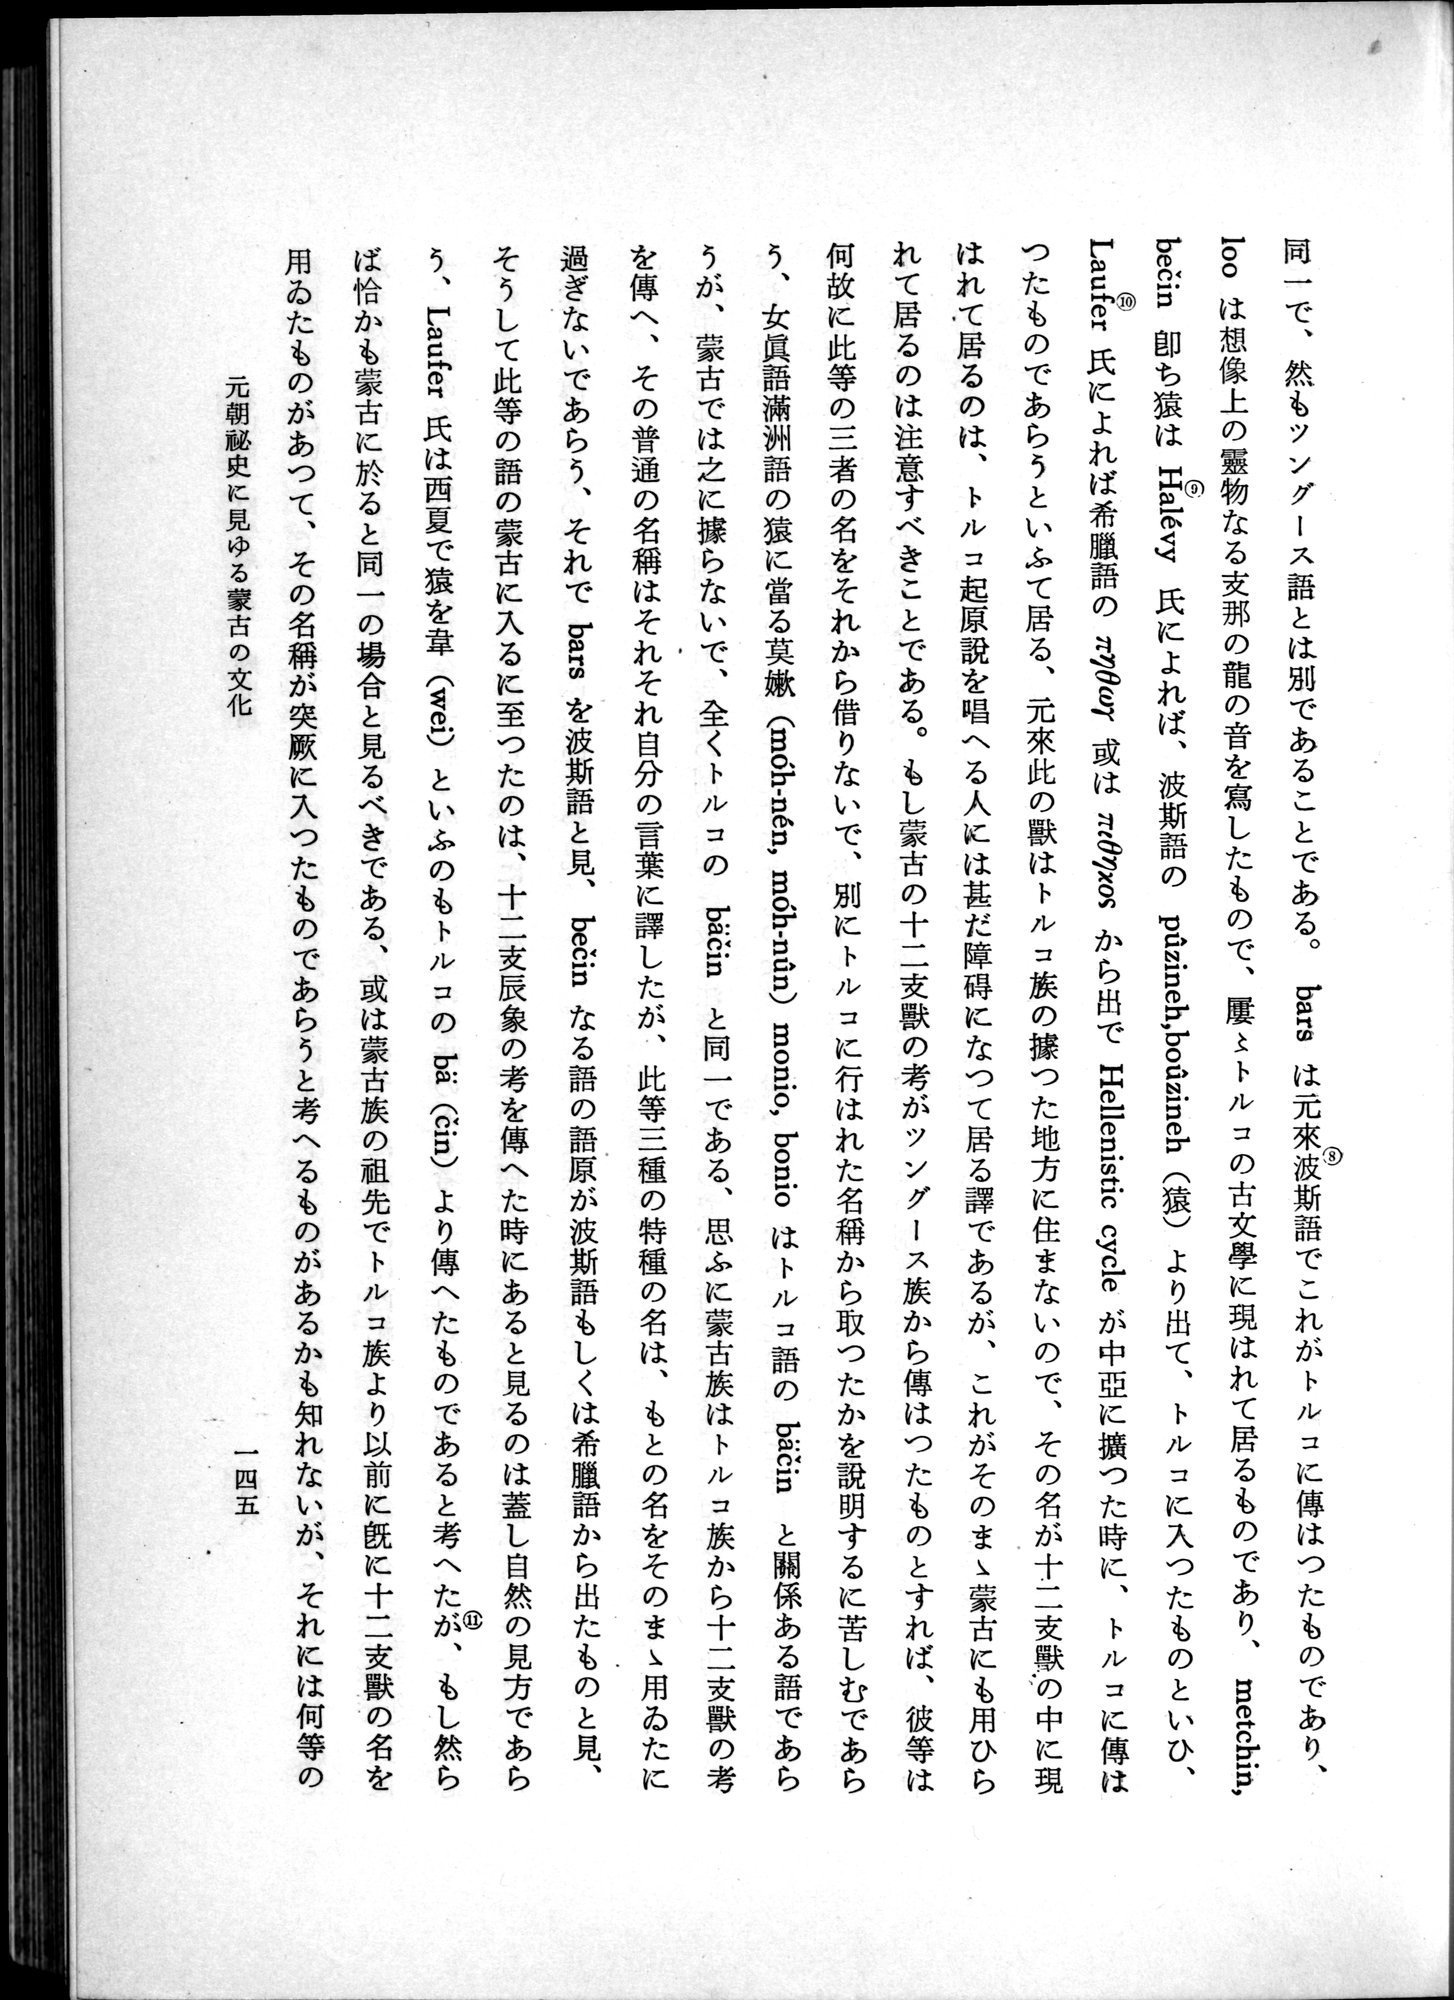 羽田博士史学論文集 : vol.1 / Page 183 (Grayscale High Resolution Image)